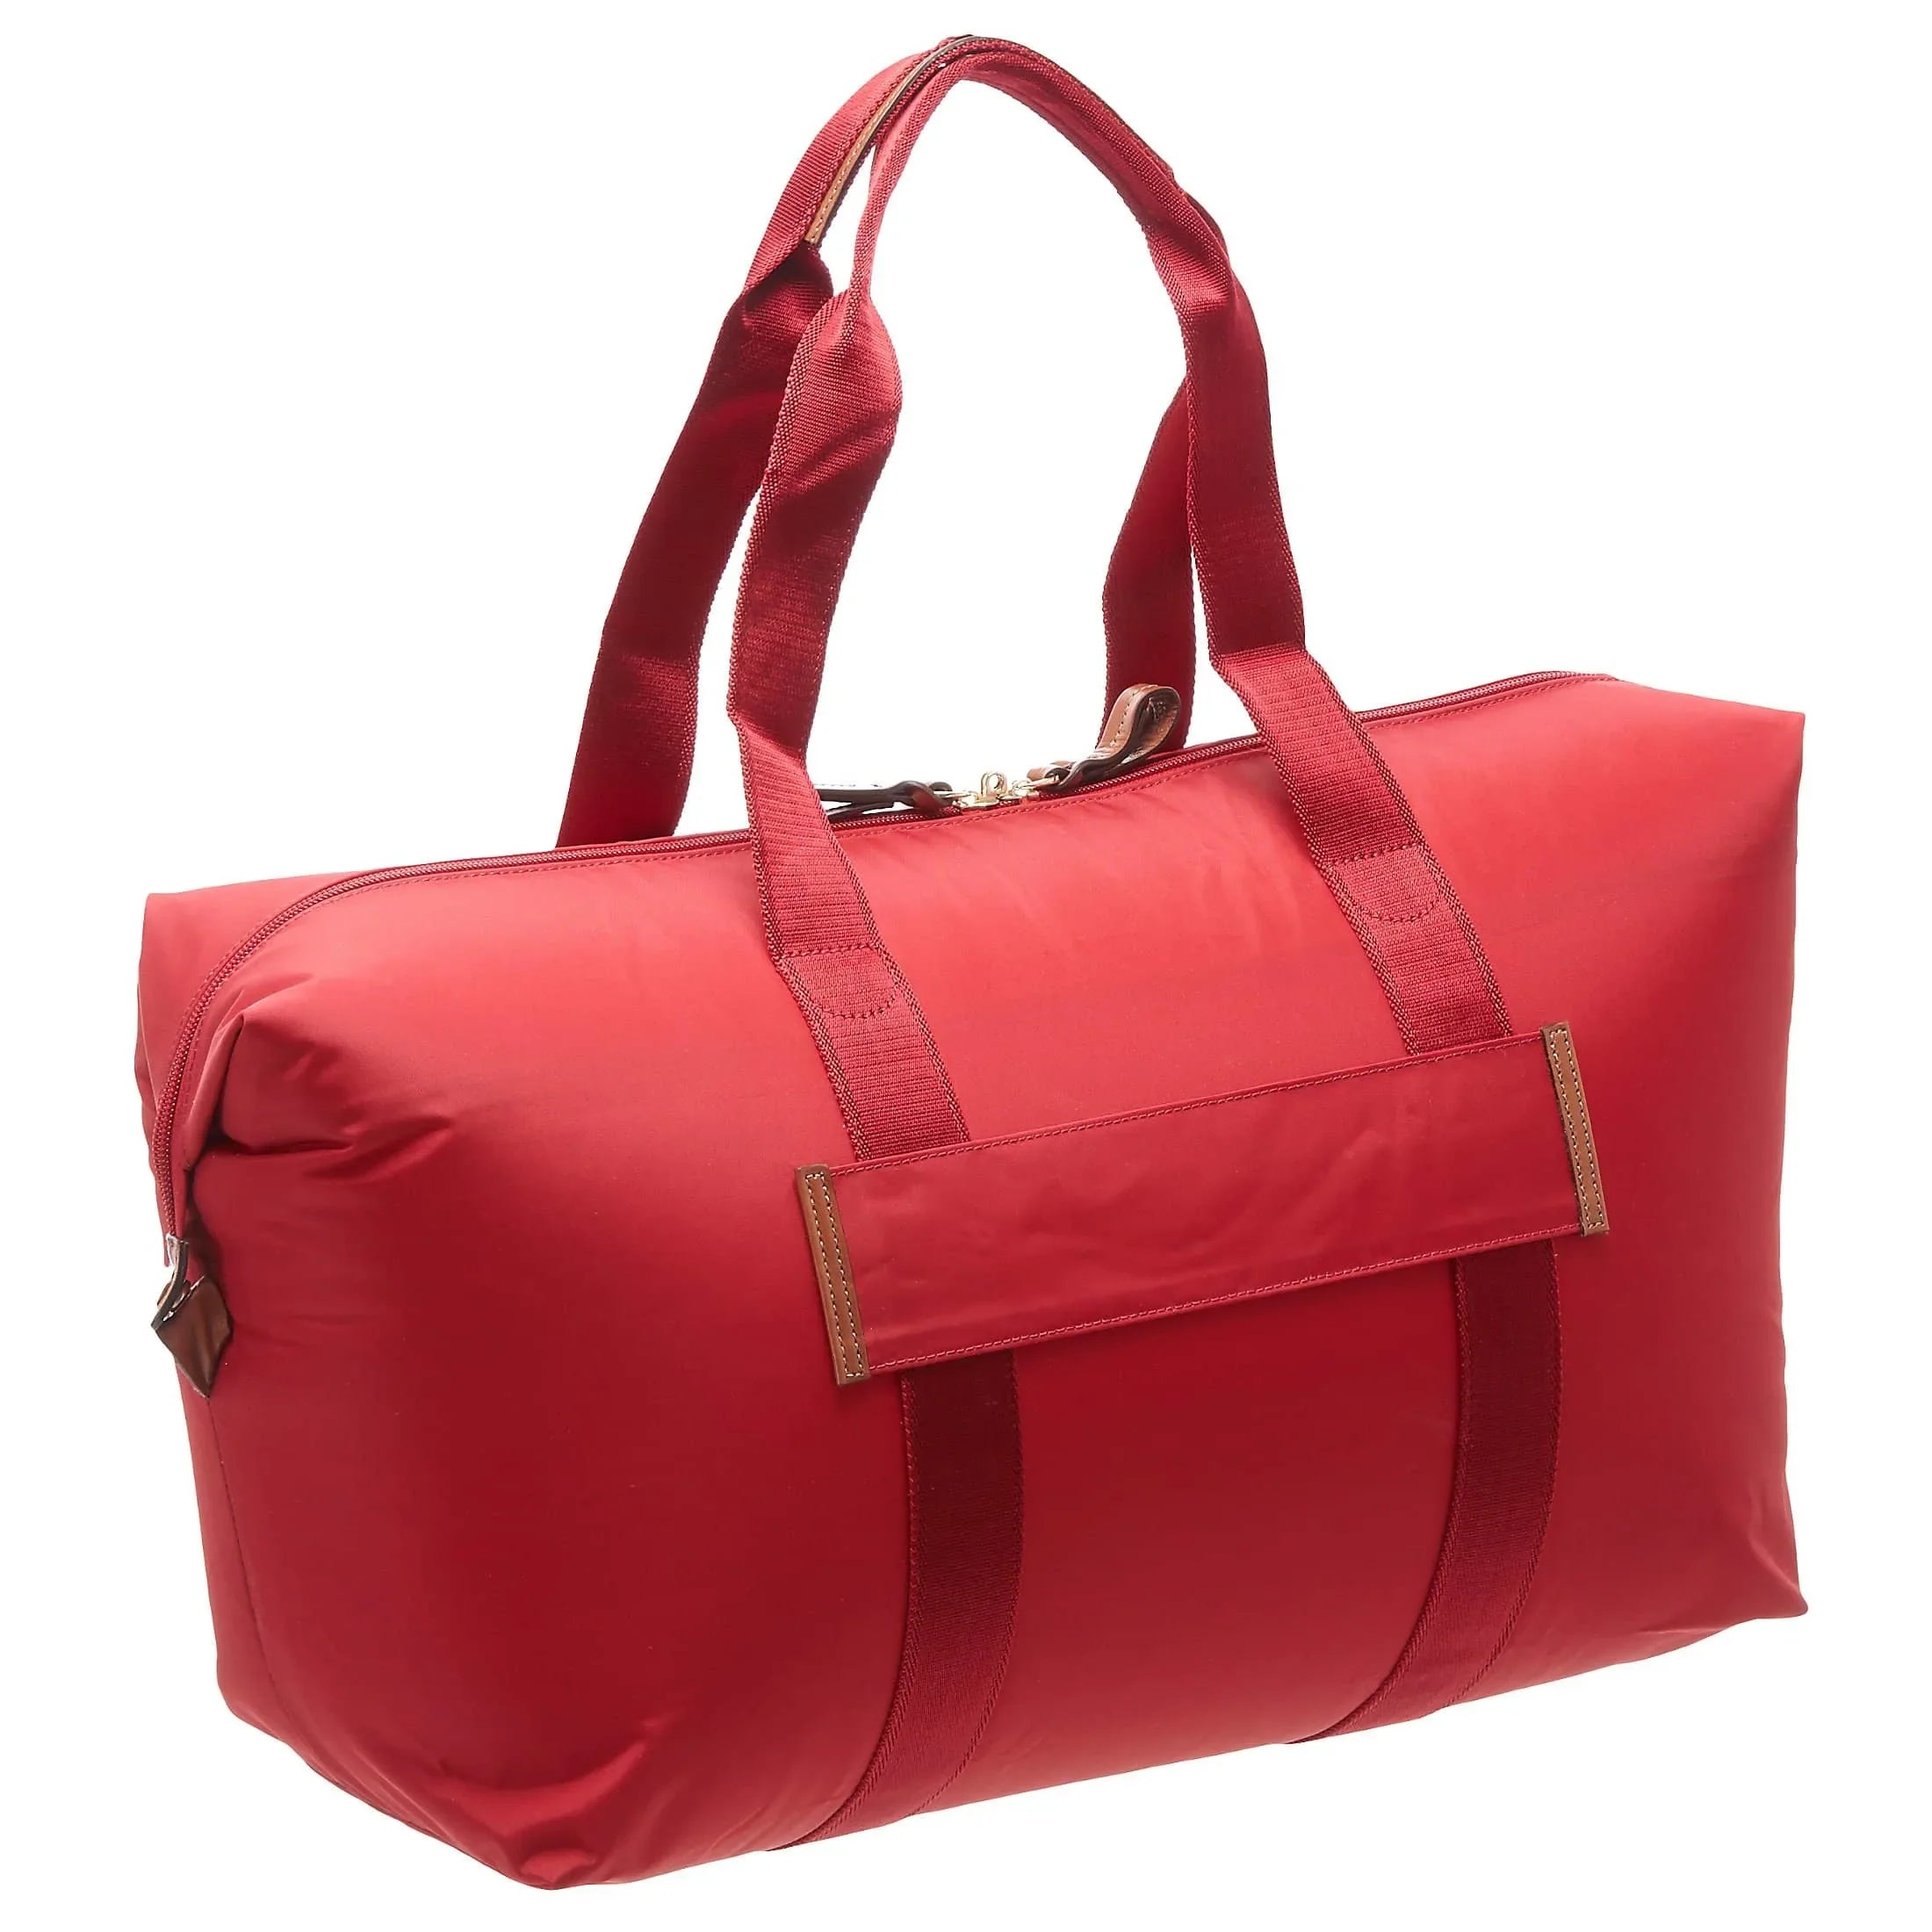 Brics X-Bag travel bag 43 cm - havana